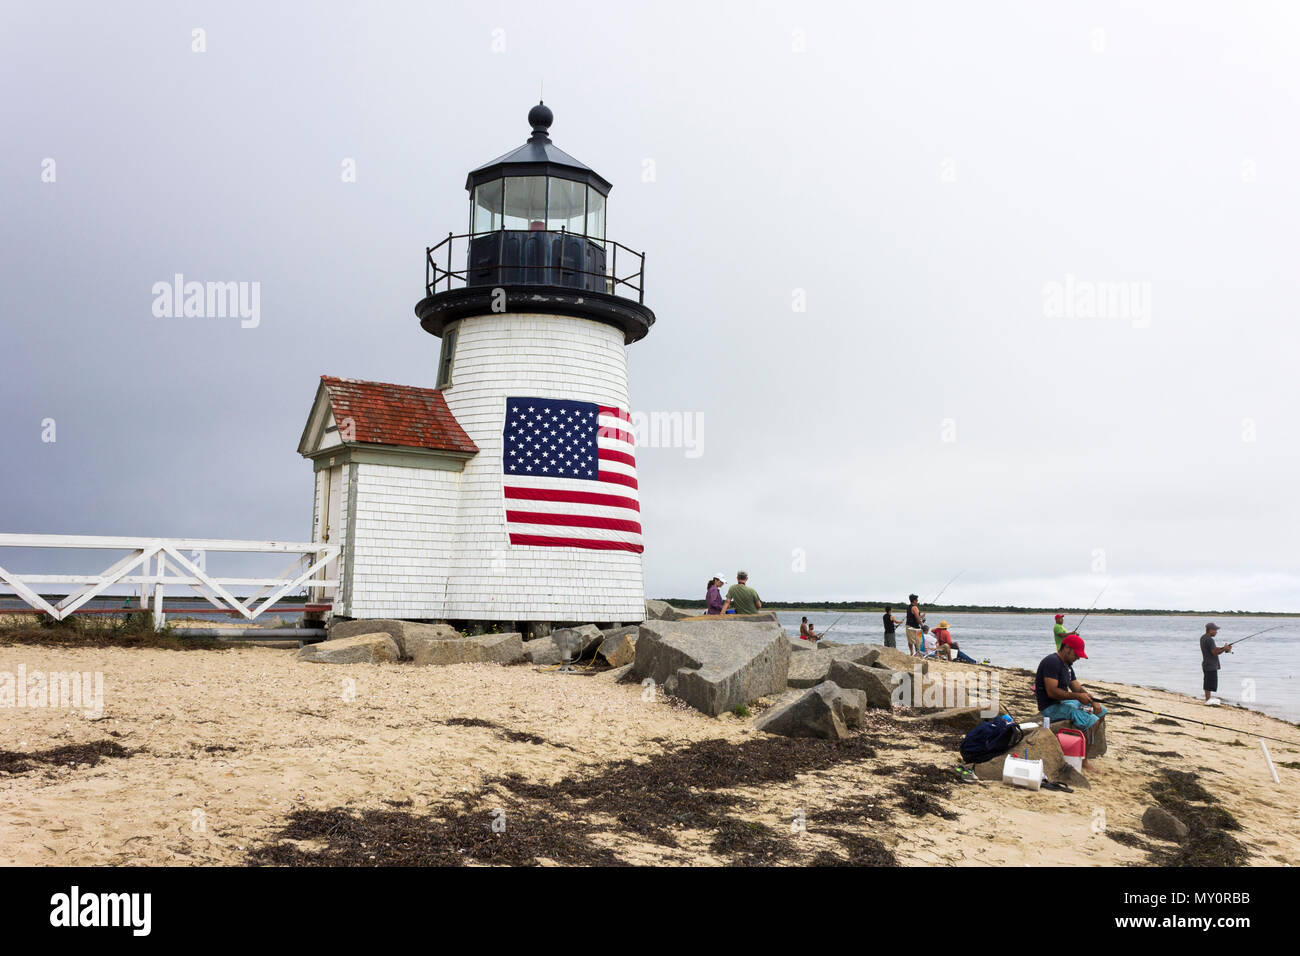 Nantucket, Massachusetts. Brant Point luz, un faro situado en el puerto de la isla de Nantucket, con varias personas a la pesca y una bandera americana Foto de stock